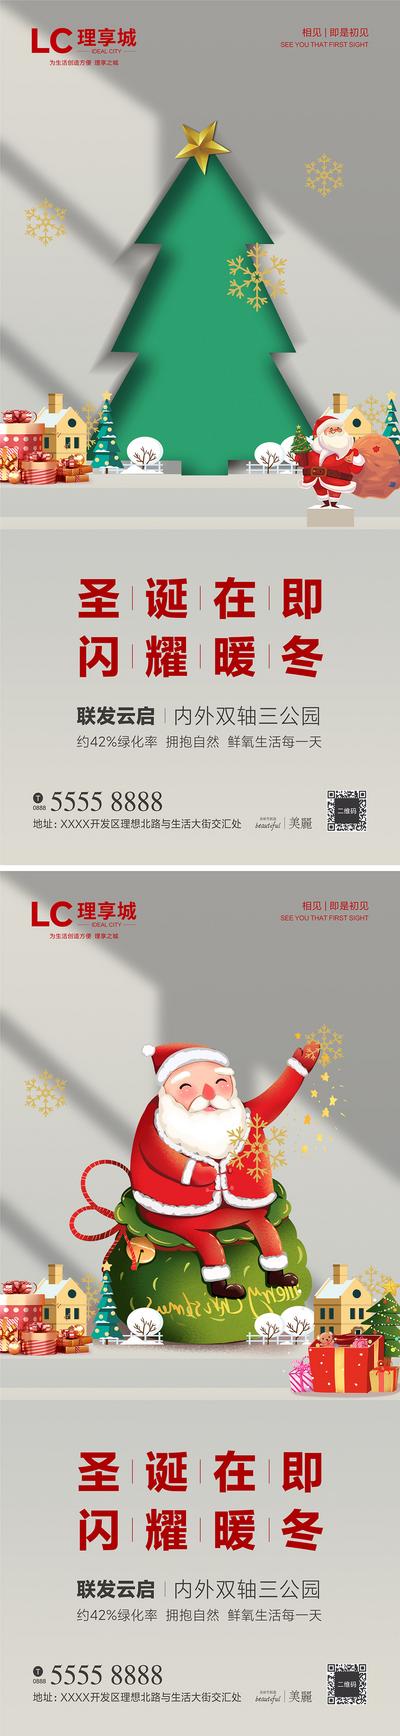 南门网 海报 地产 公历节日 西方节日 圣诞节 圣诞老人 圣诞树 礼物 平安夜 系列